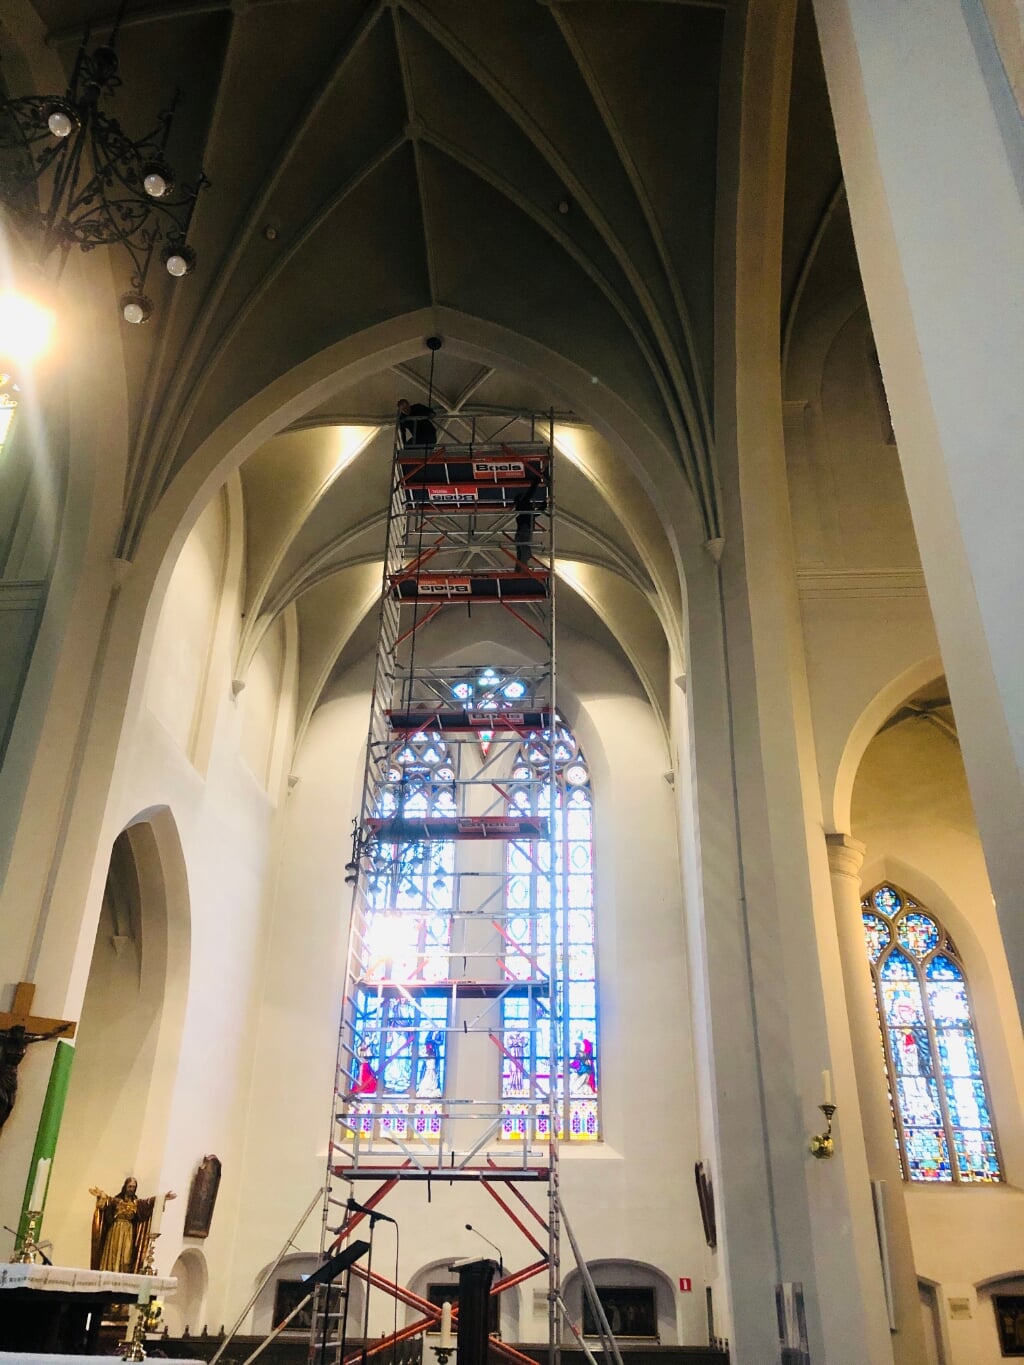 Om de bekabeling aan te brengen in de gewelven werd begin februari een achttien meter hoge steiger in de basiliek opgebouwd. (Foto: Fons van Heesch).